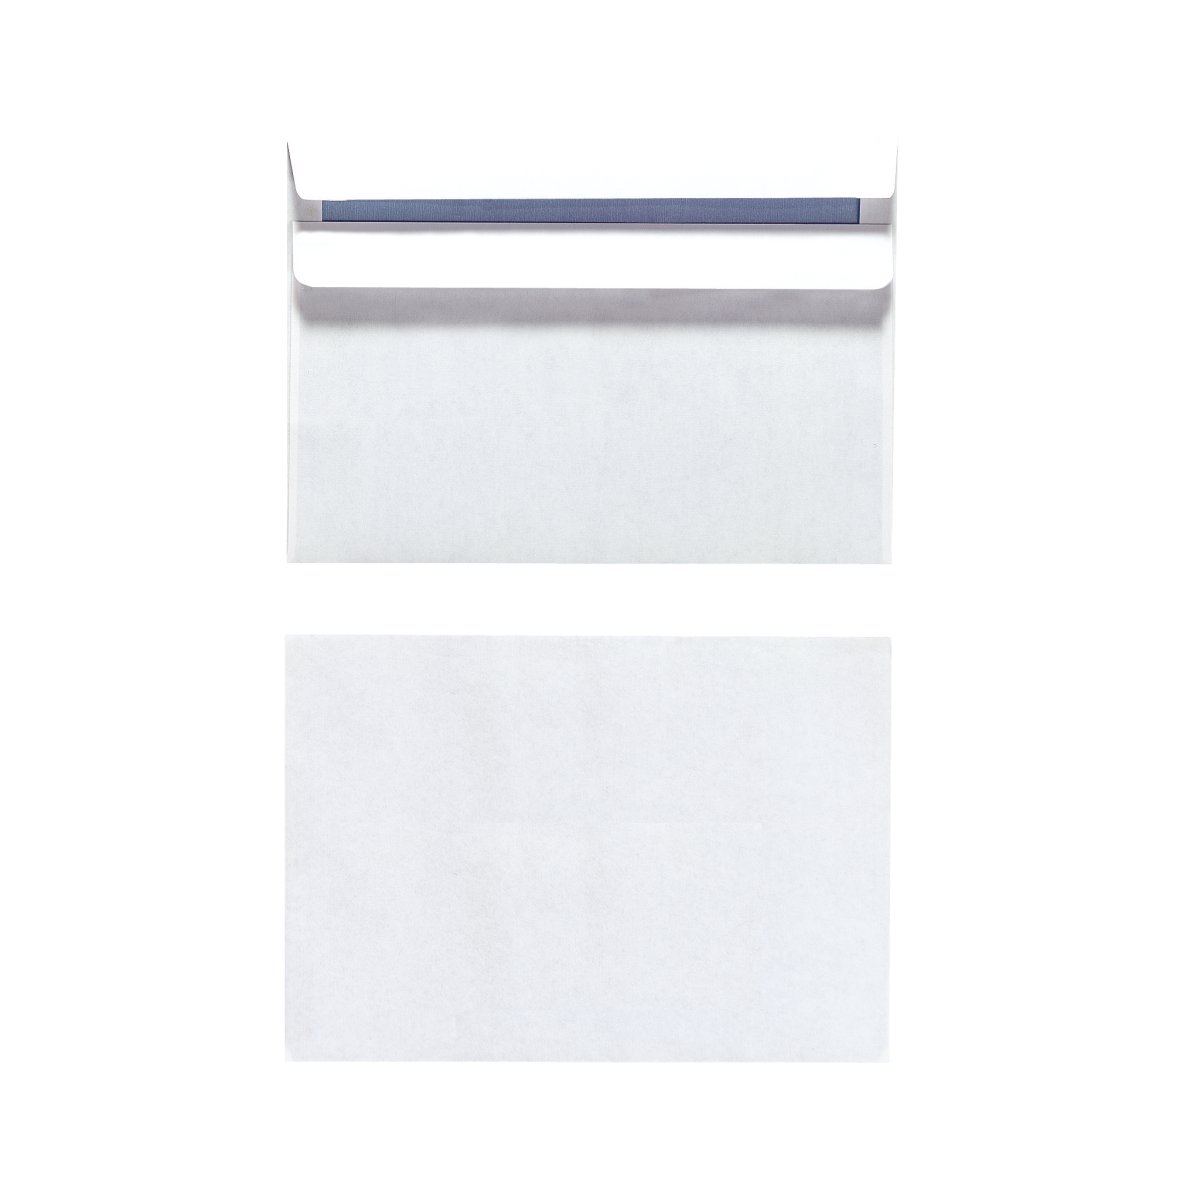 WHITE STICKY ADHESIVE 11,4 x 16,2 cm Envelopes C6 